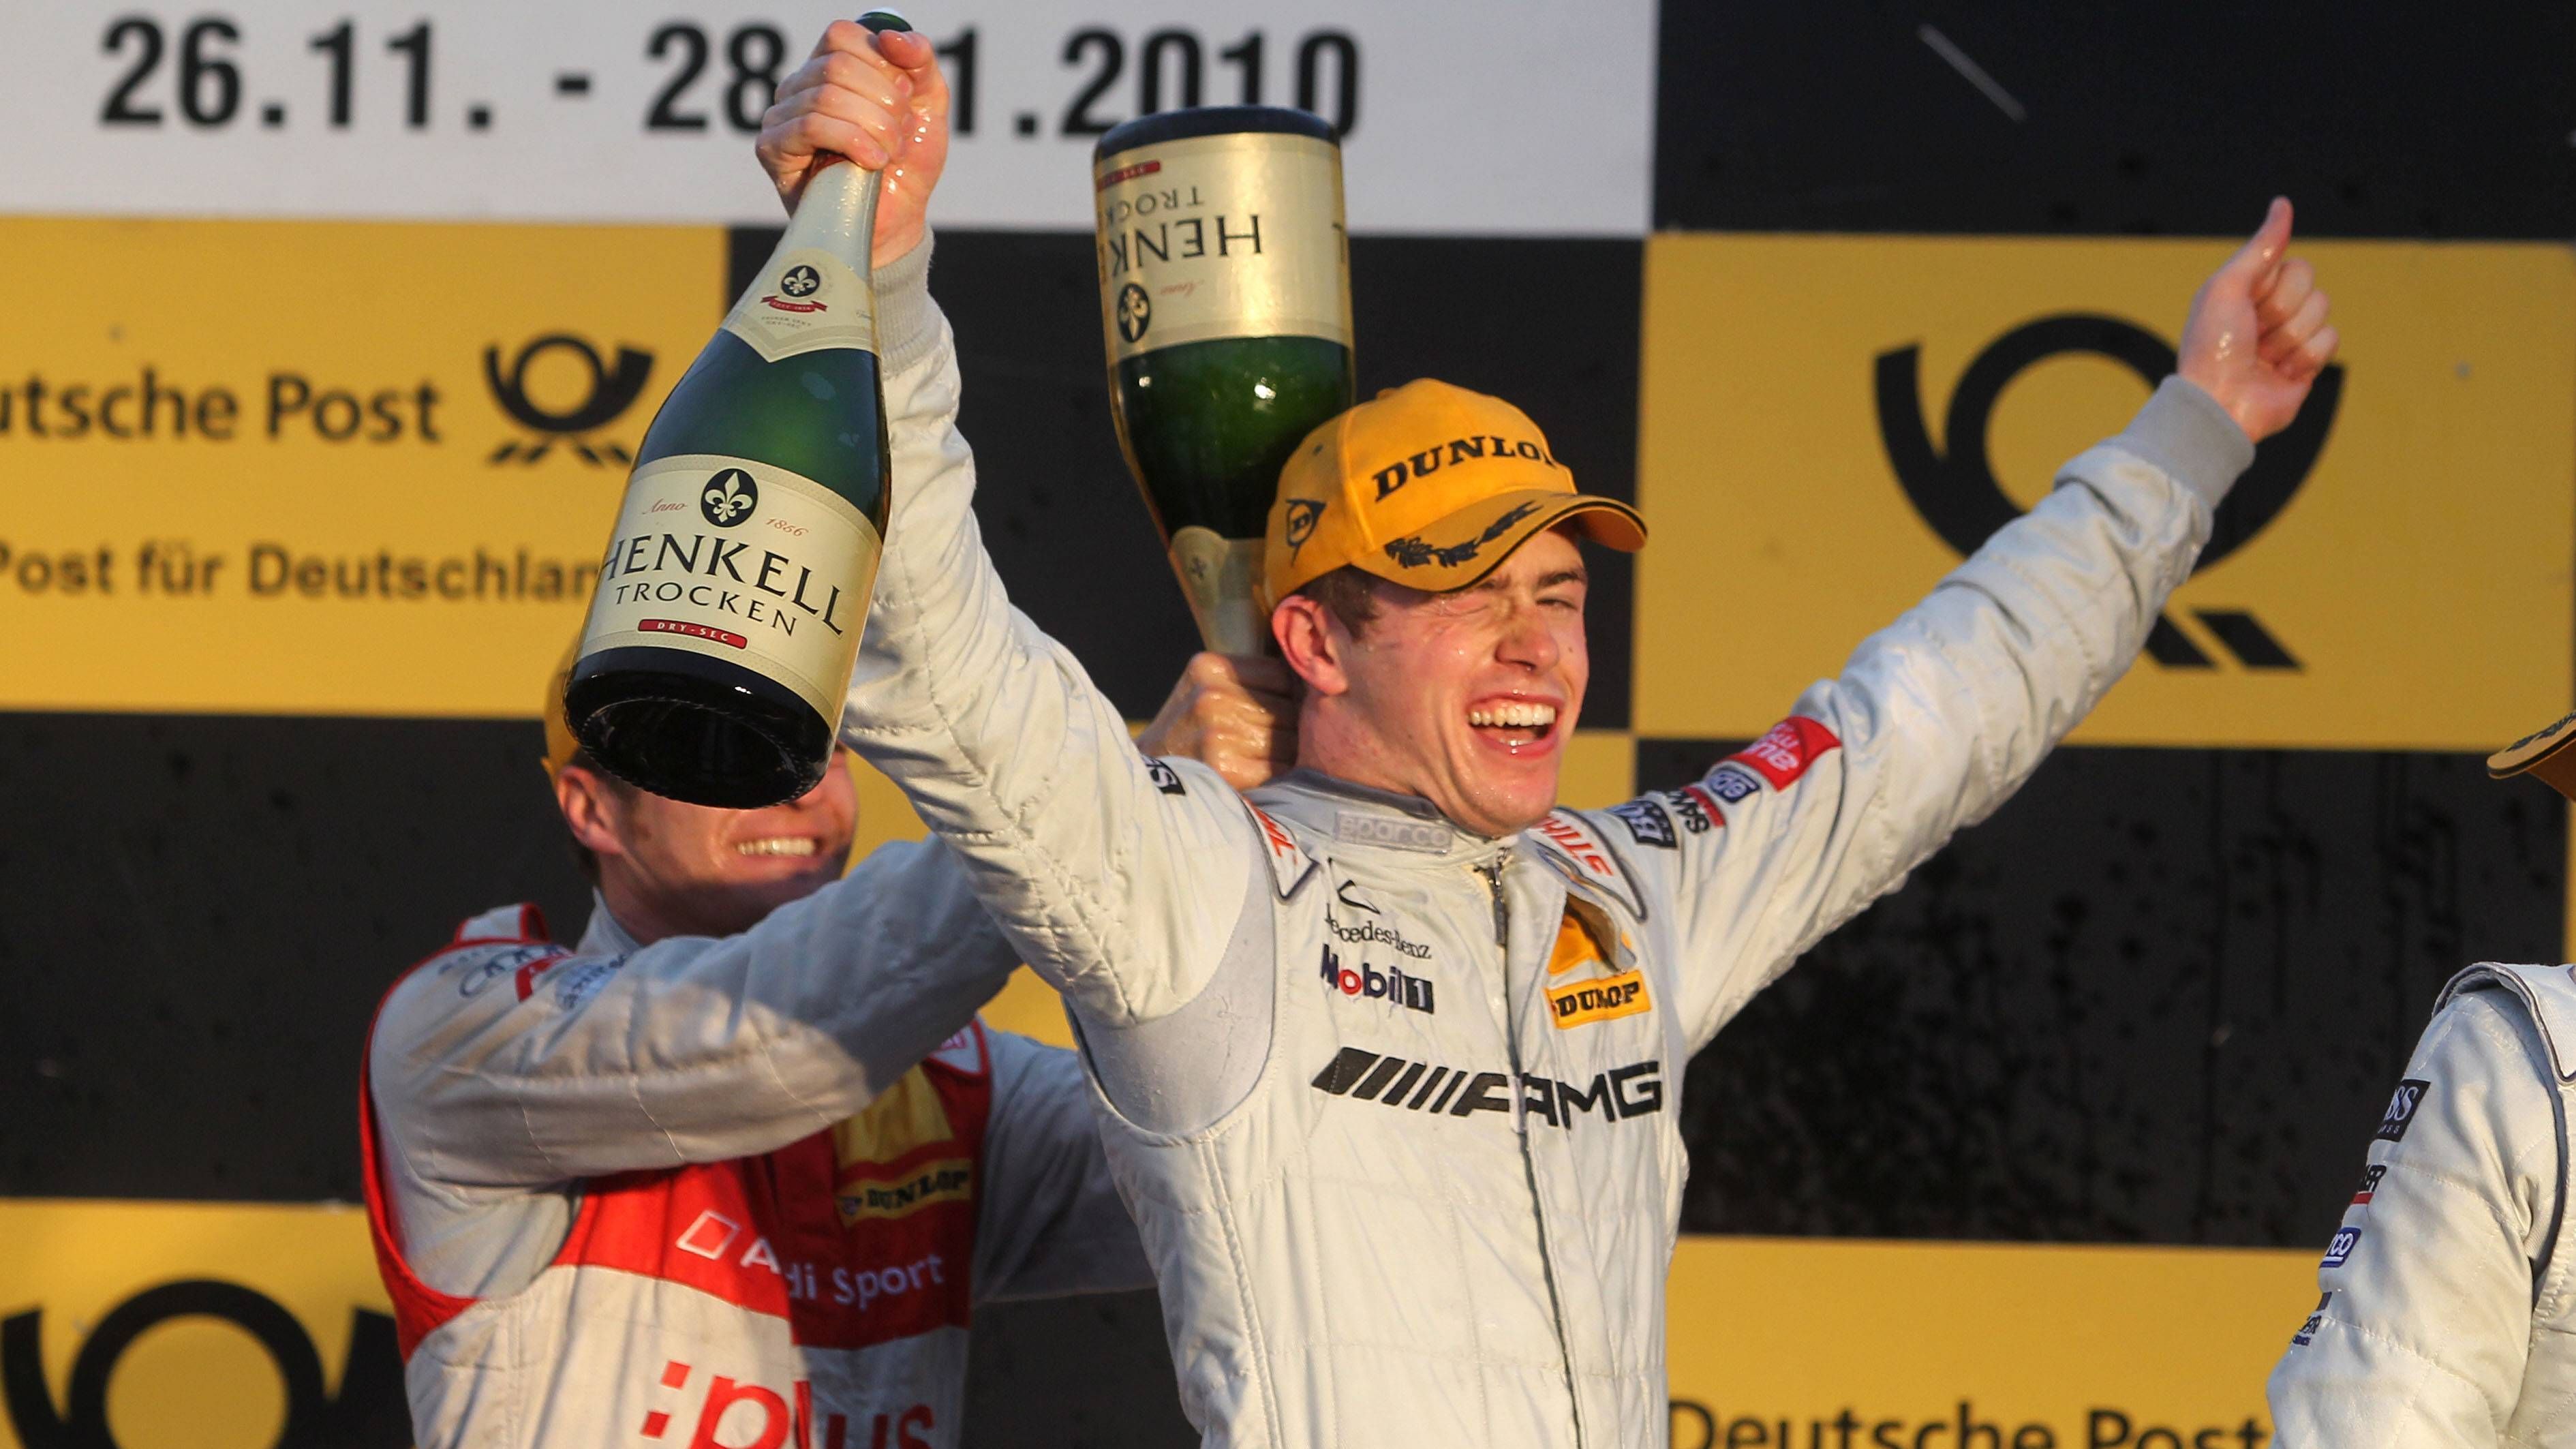 <strong>2010: Paul di Resta</strong><br>Der Brite gewann die DTM 2010 in seiner AMG-Mercedes C-Klasse